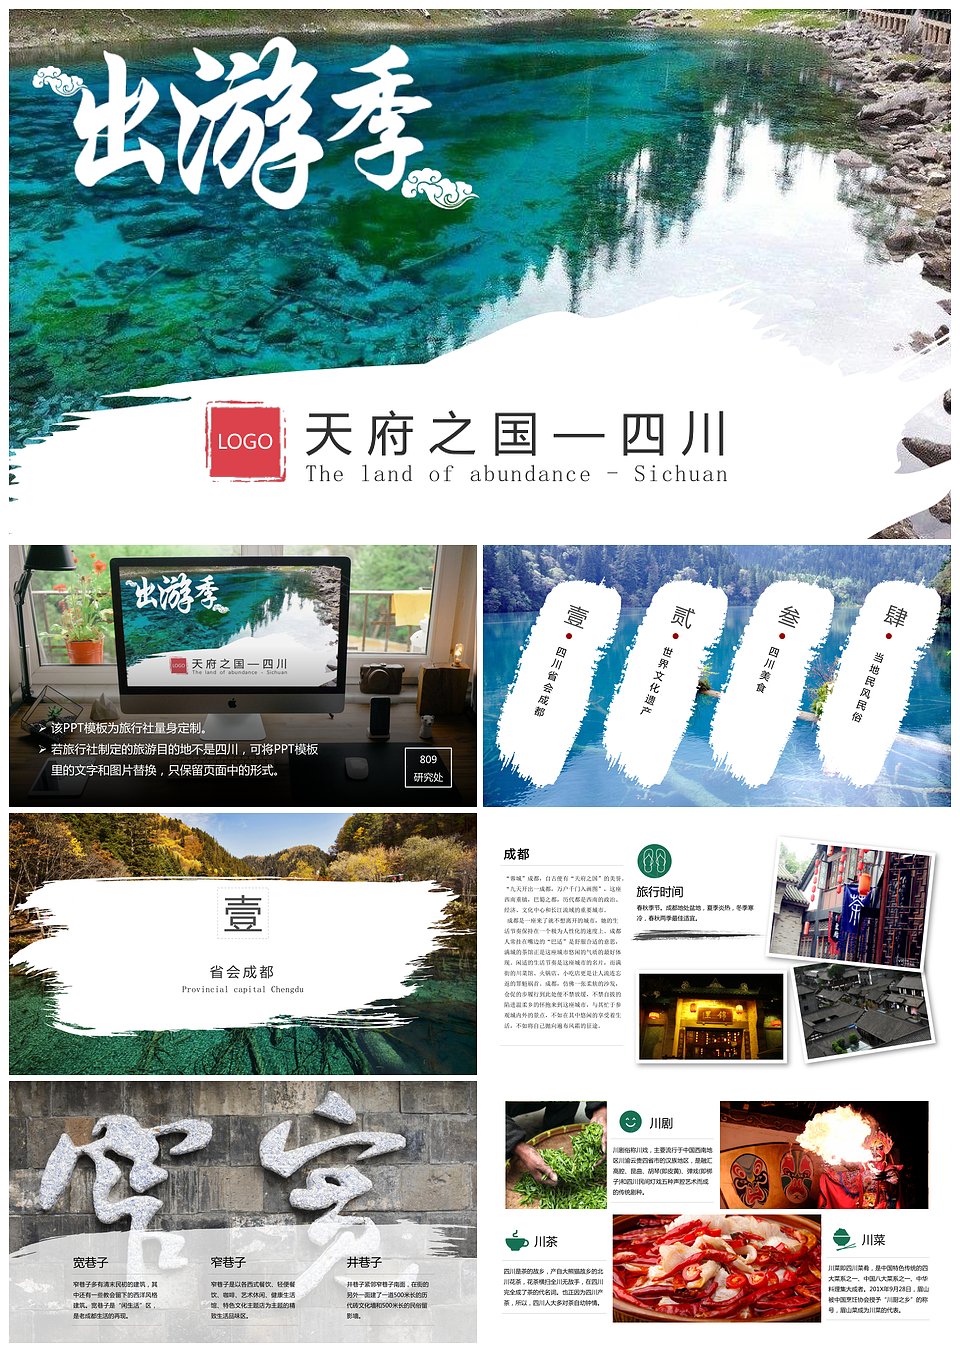 旅游专题四川名胜旅游风景旅行社景区PPT展示(图1)